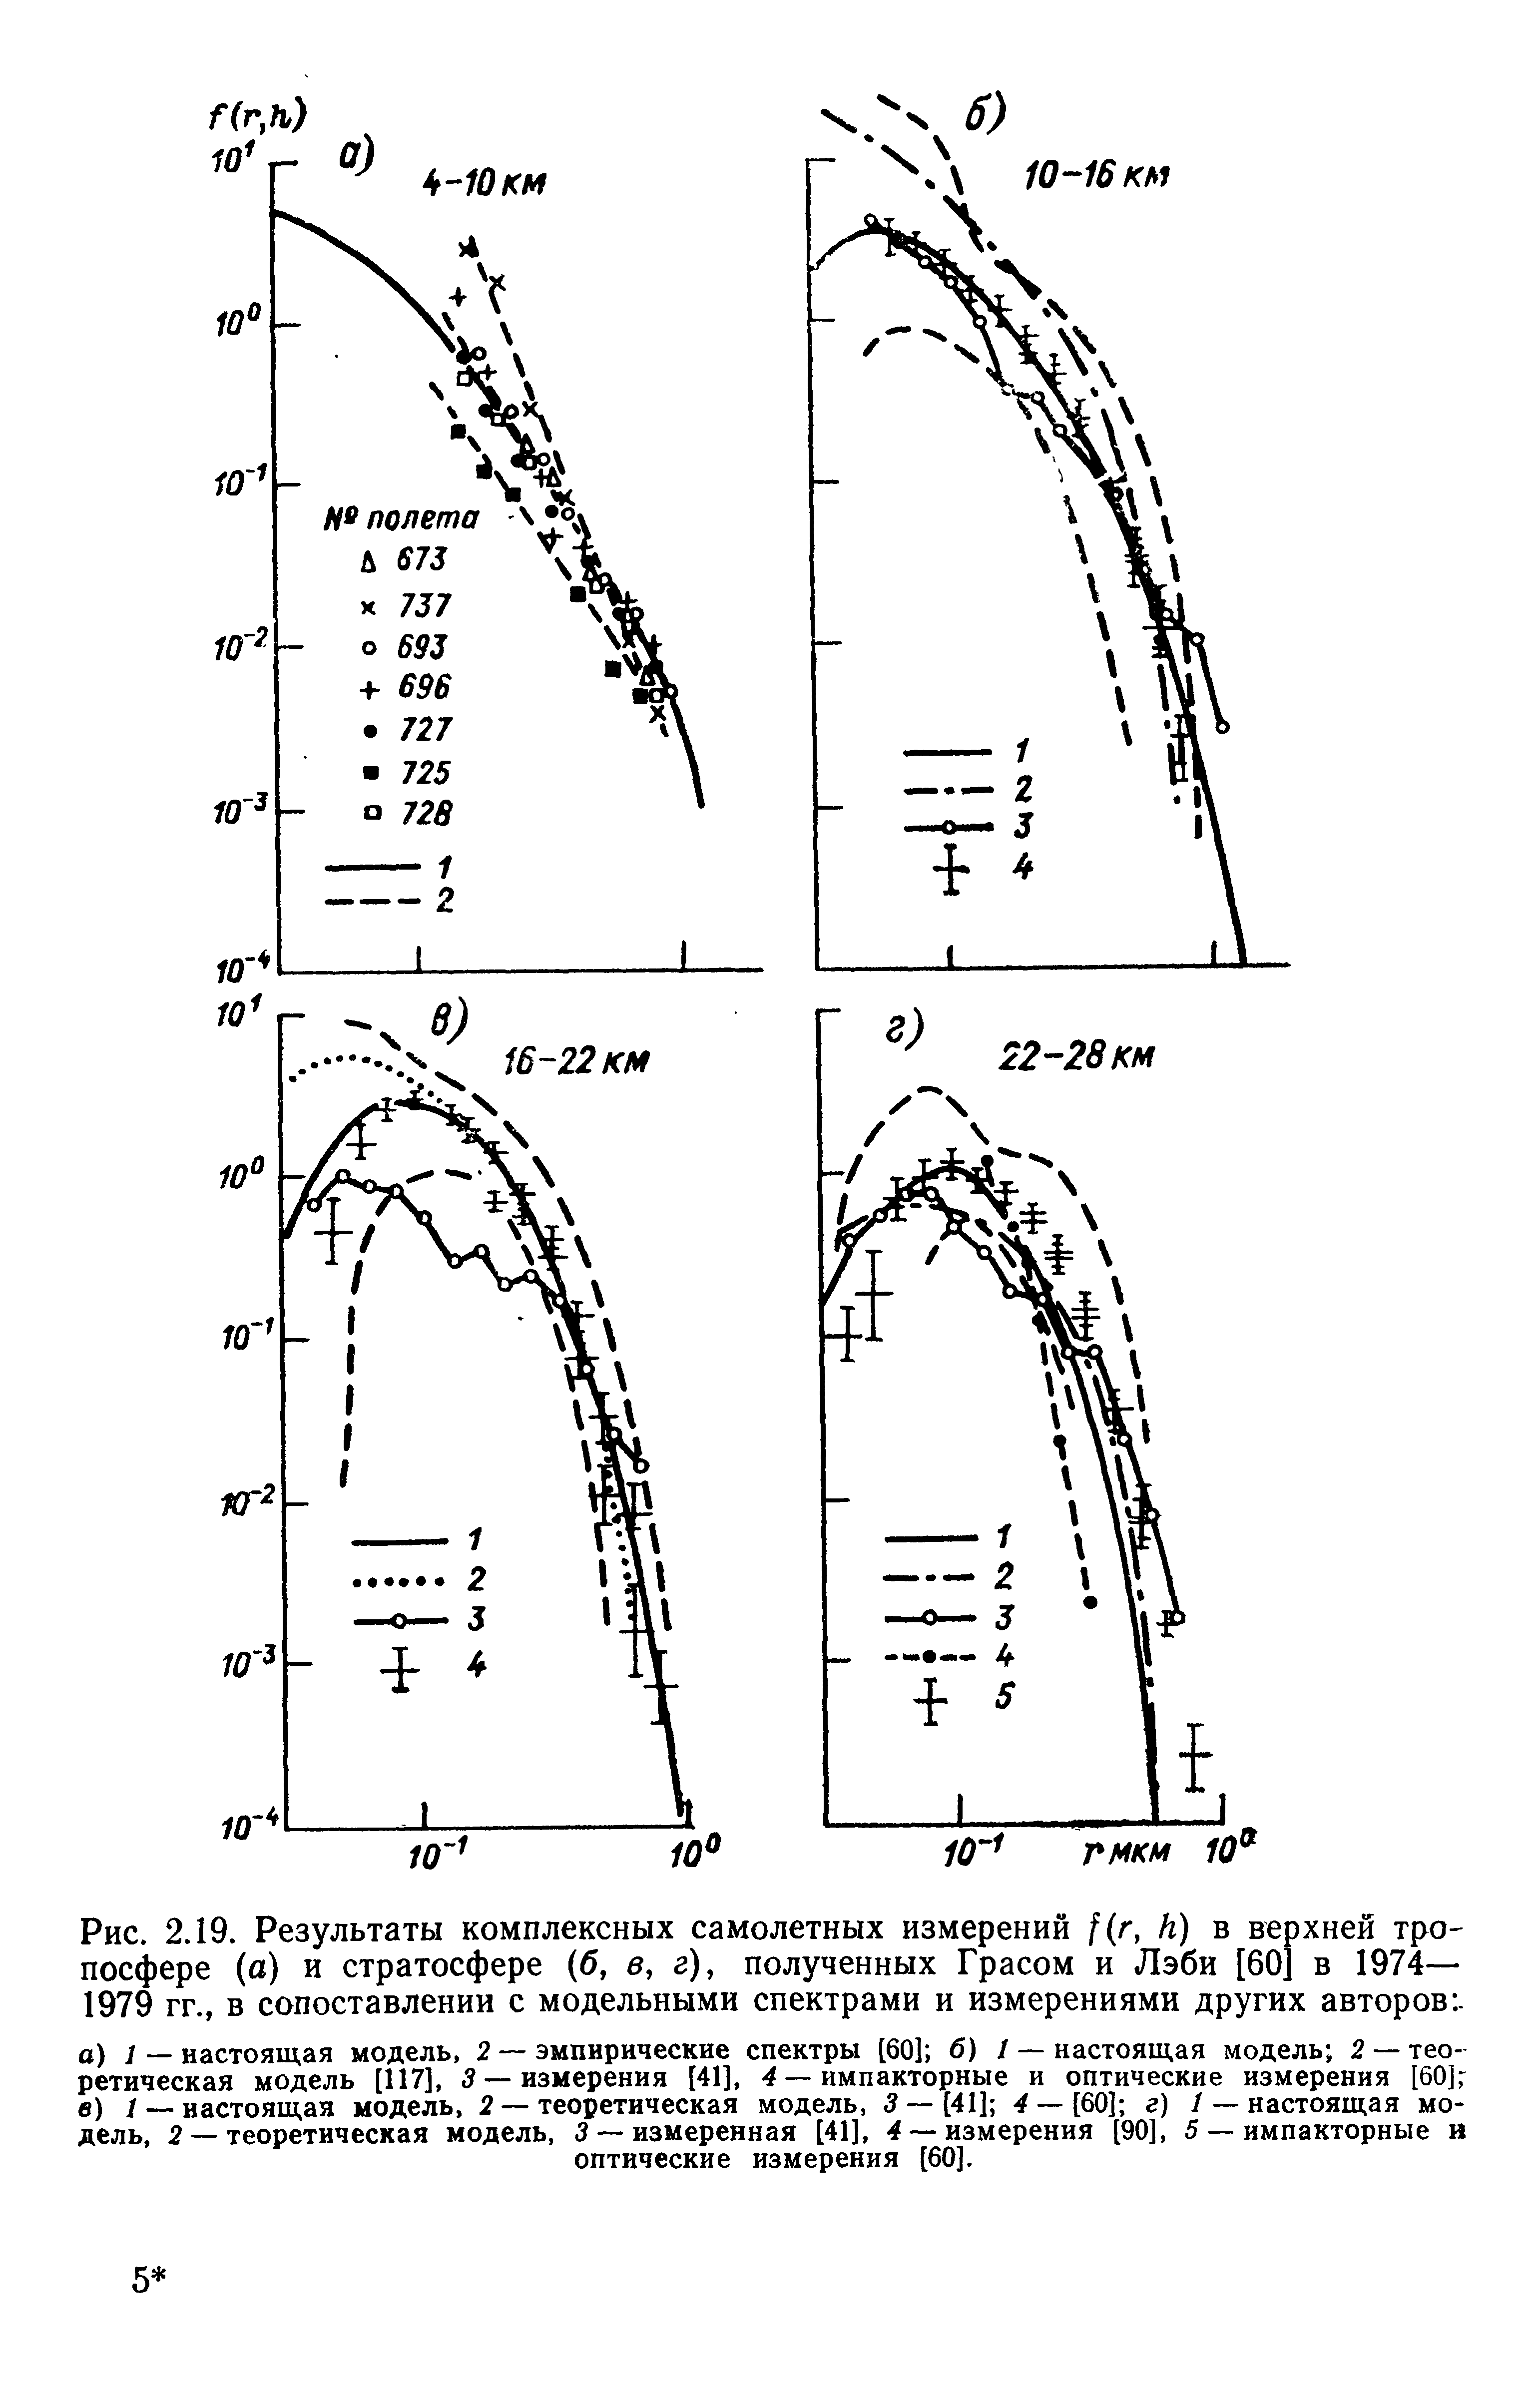 Рис. 2.19. Результаты комплексных самолетных измерений г, К) в верхней тропосфере (а) и стратосфере (б, в, г), полученных Грасом и Лэби [60] в 1974— 1979 гг., в сопоставлении с модельными спектрами и измерениями других авторов
